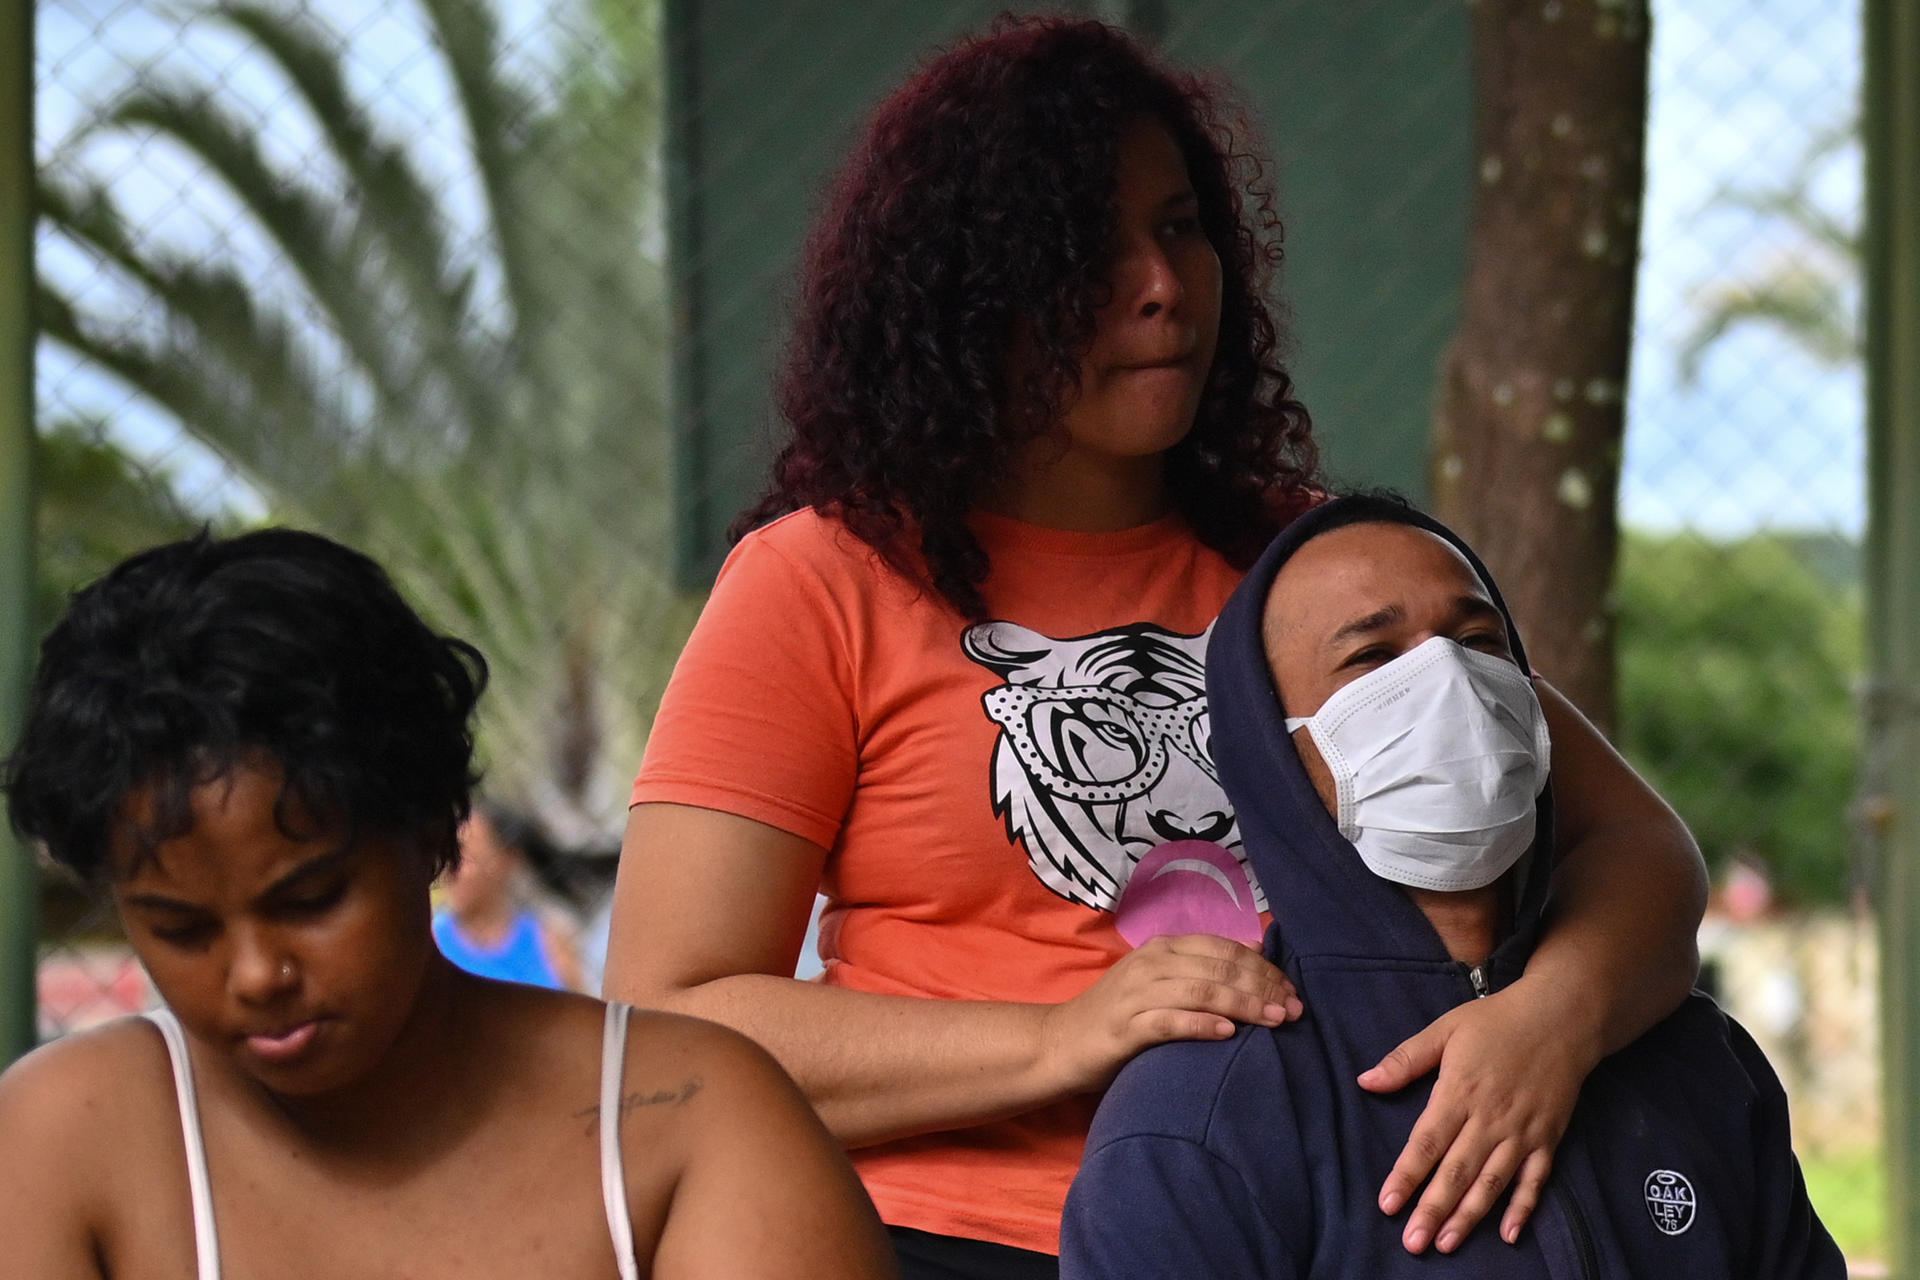 Foto de archivo de personas esperan para recibir atención médica en una tienda de campaña para tratar casos sospechosos de dengue en Brasil. EFE/ Andre Borges